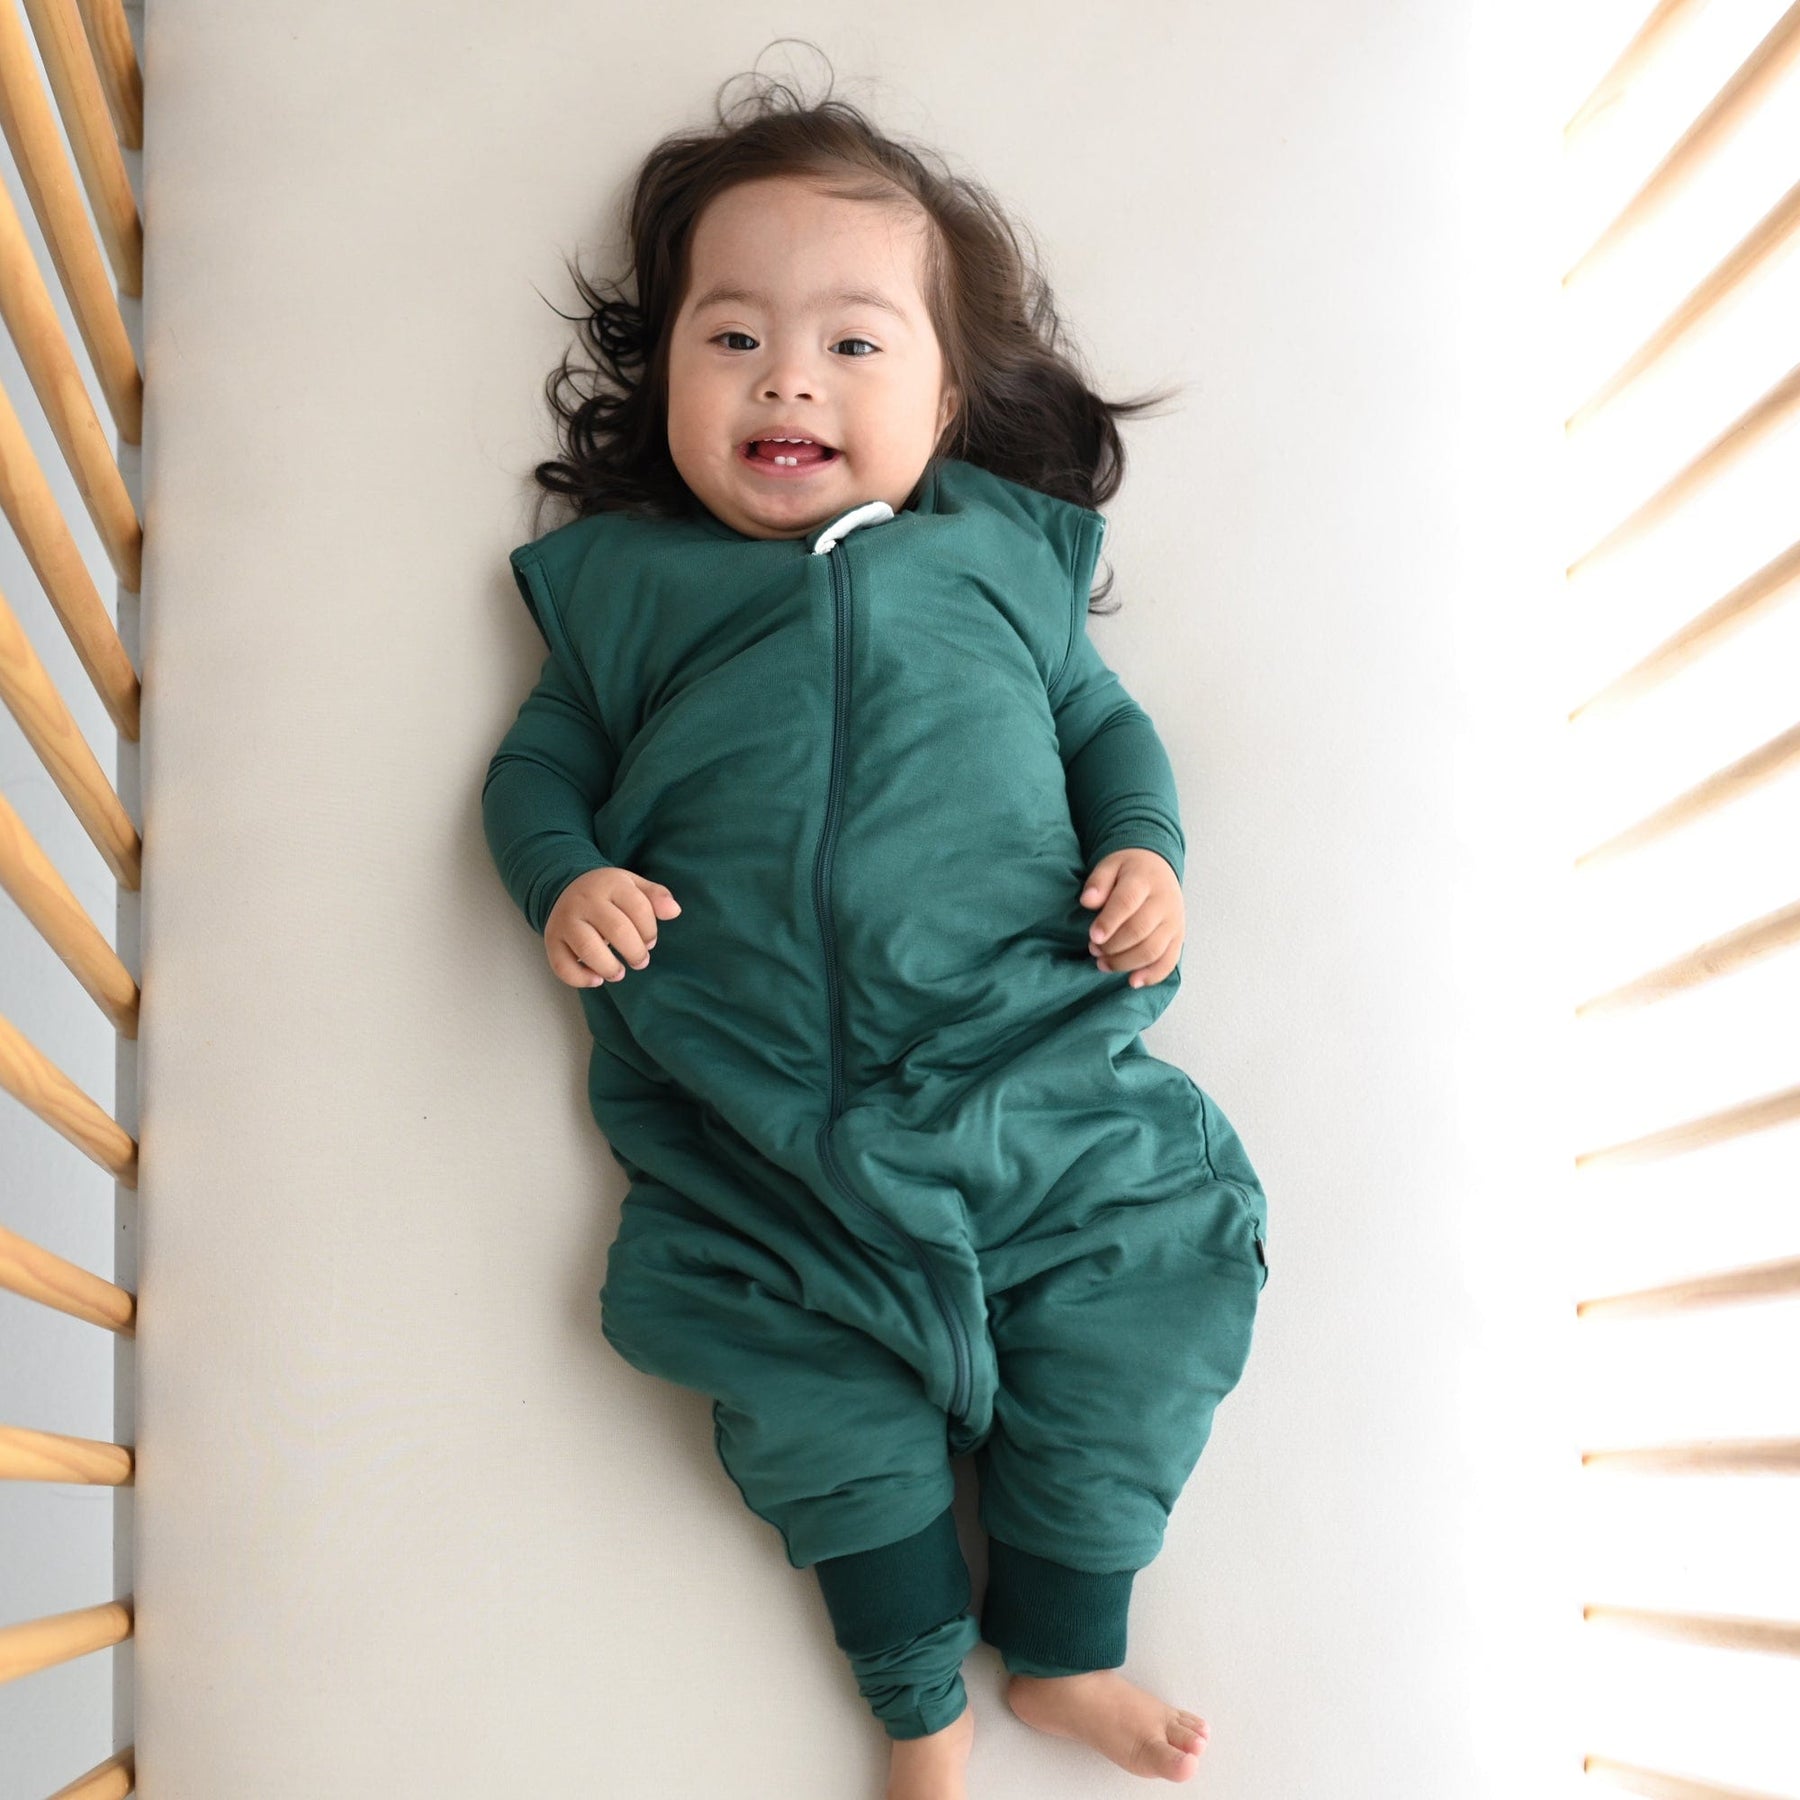 Toddler wearing Kyte Baby Sleep Bag Walker in Emerald 1.0